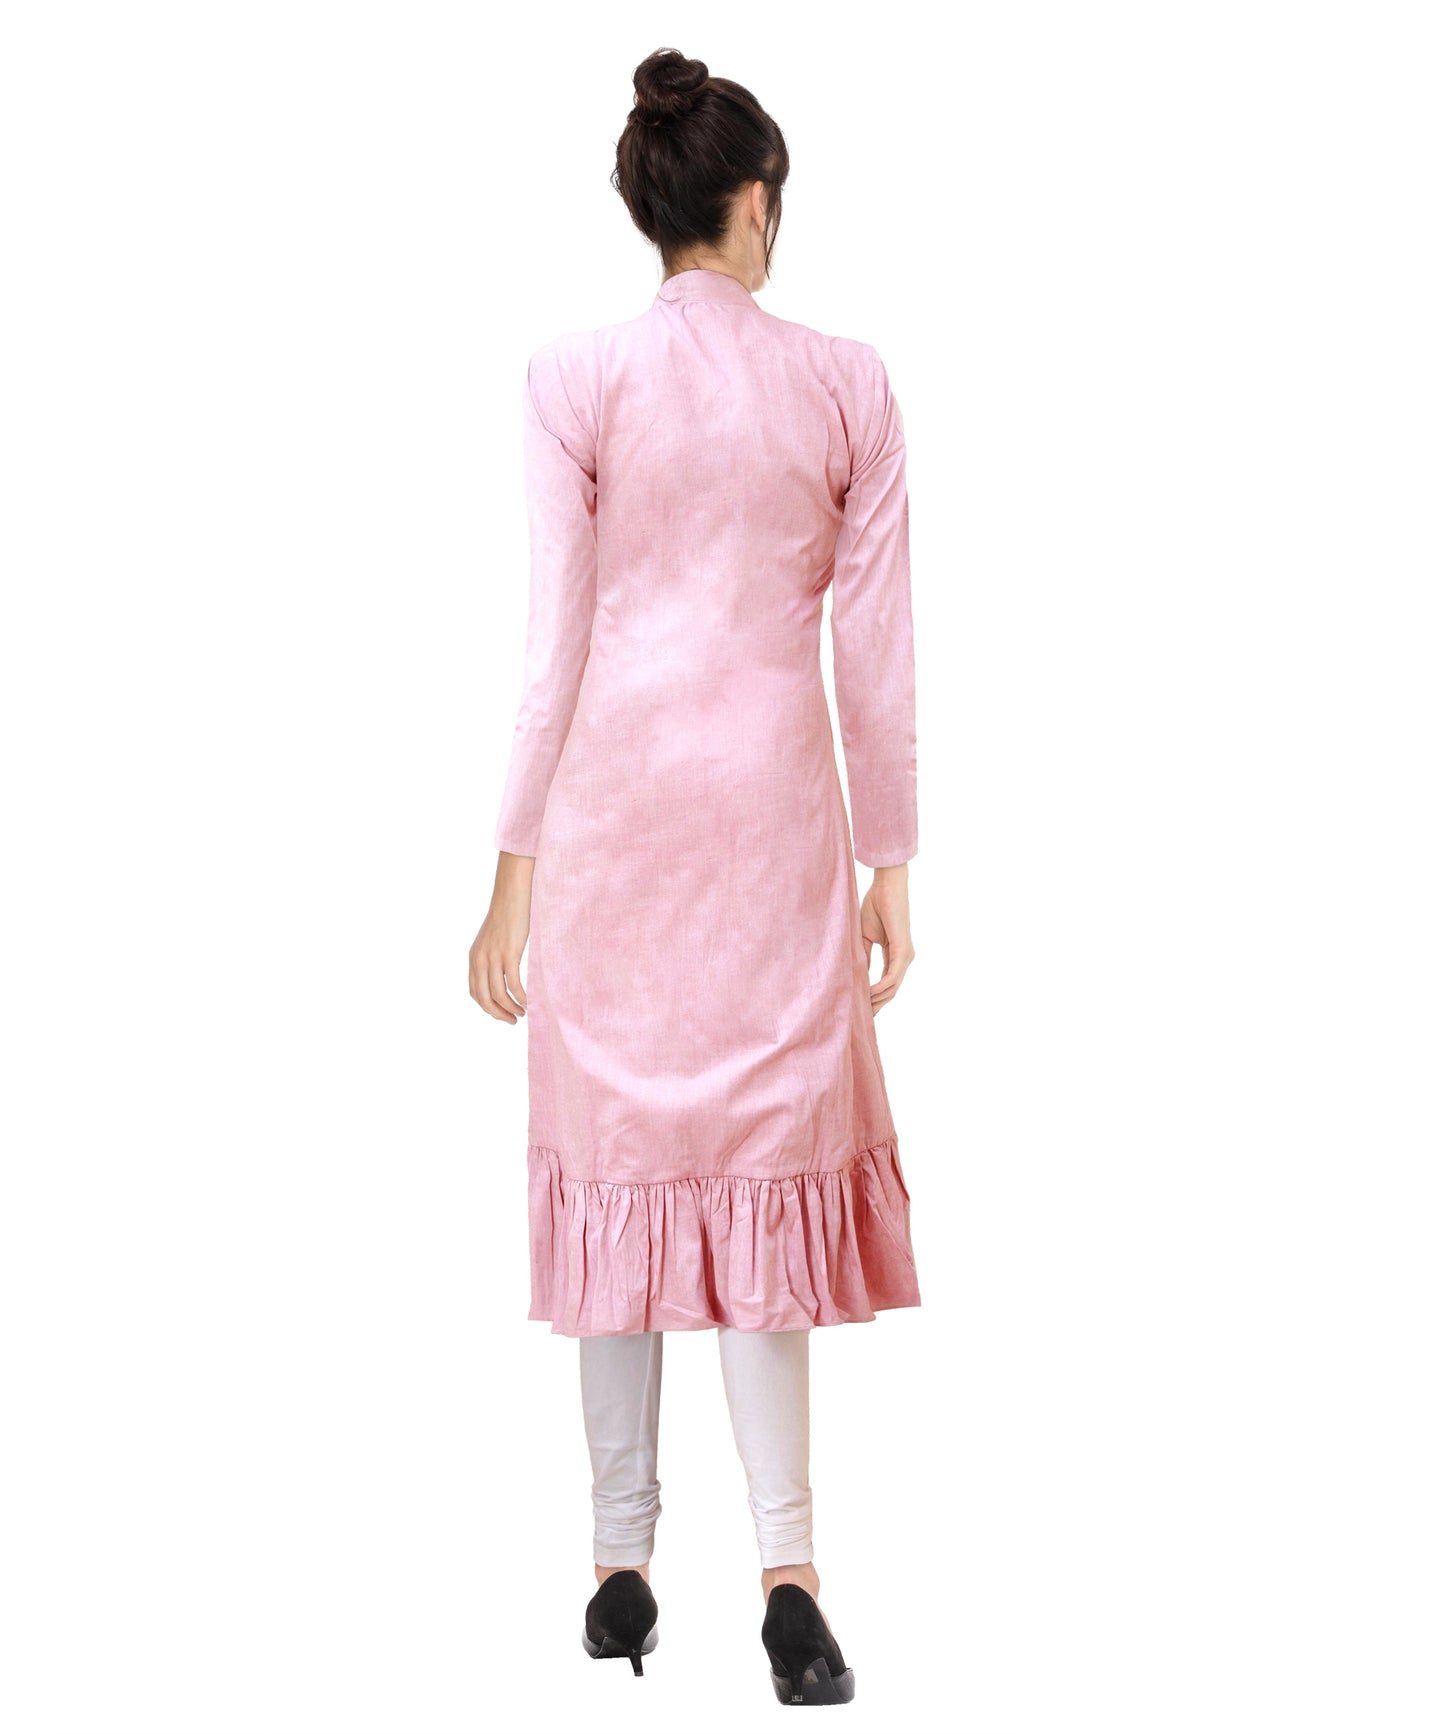 Pastel Pink Cotton Dress | S3W048